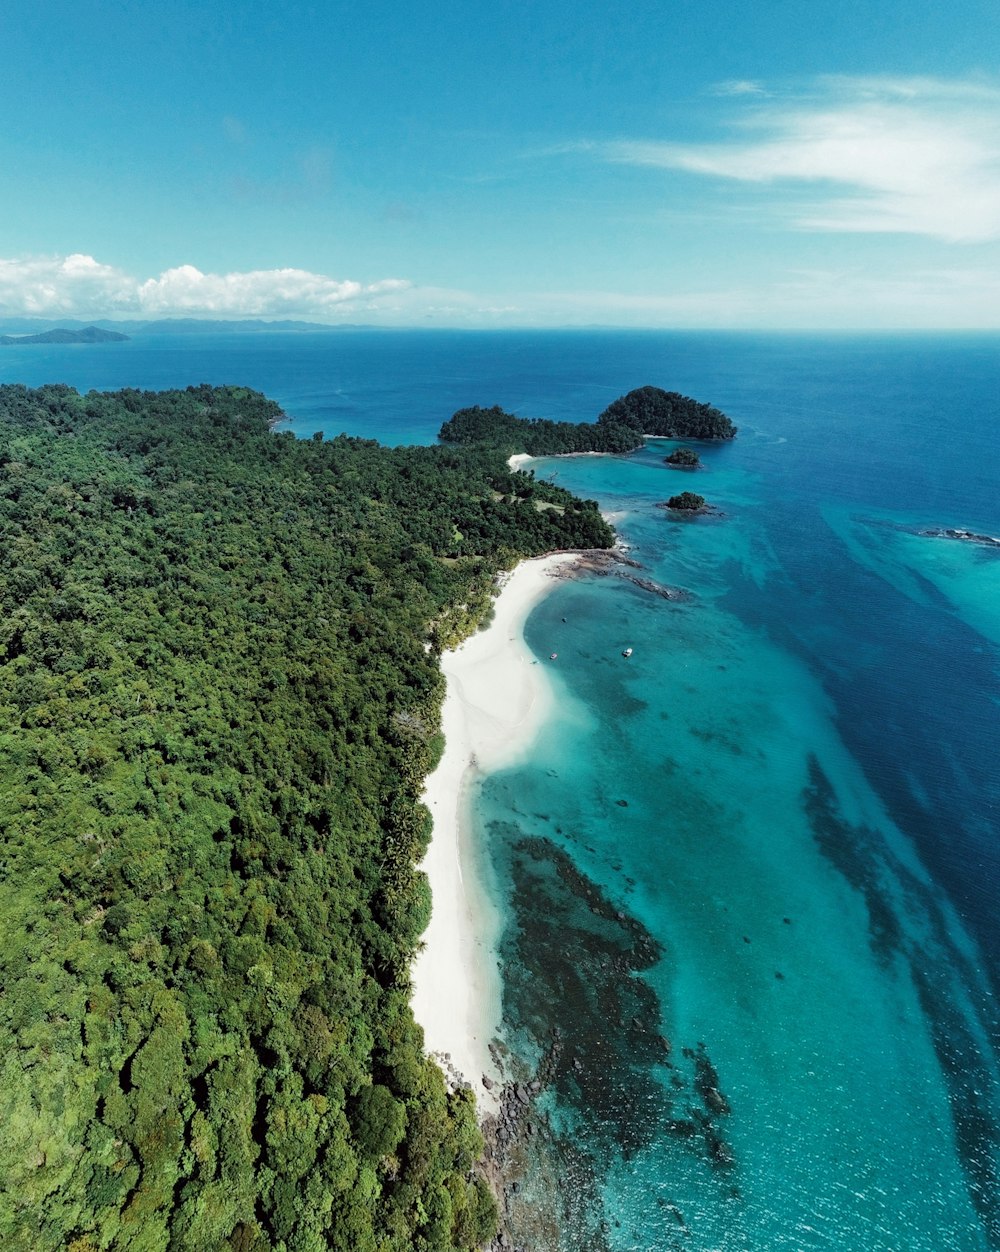 Una vista aerea di un'isola tropicale con una spiaggia di sabbia bianca